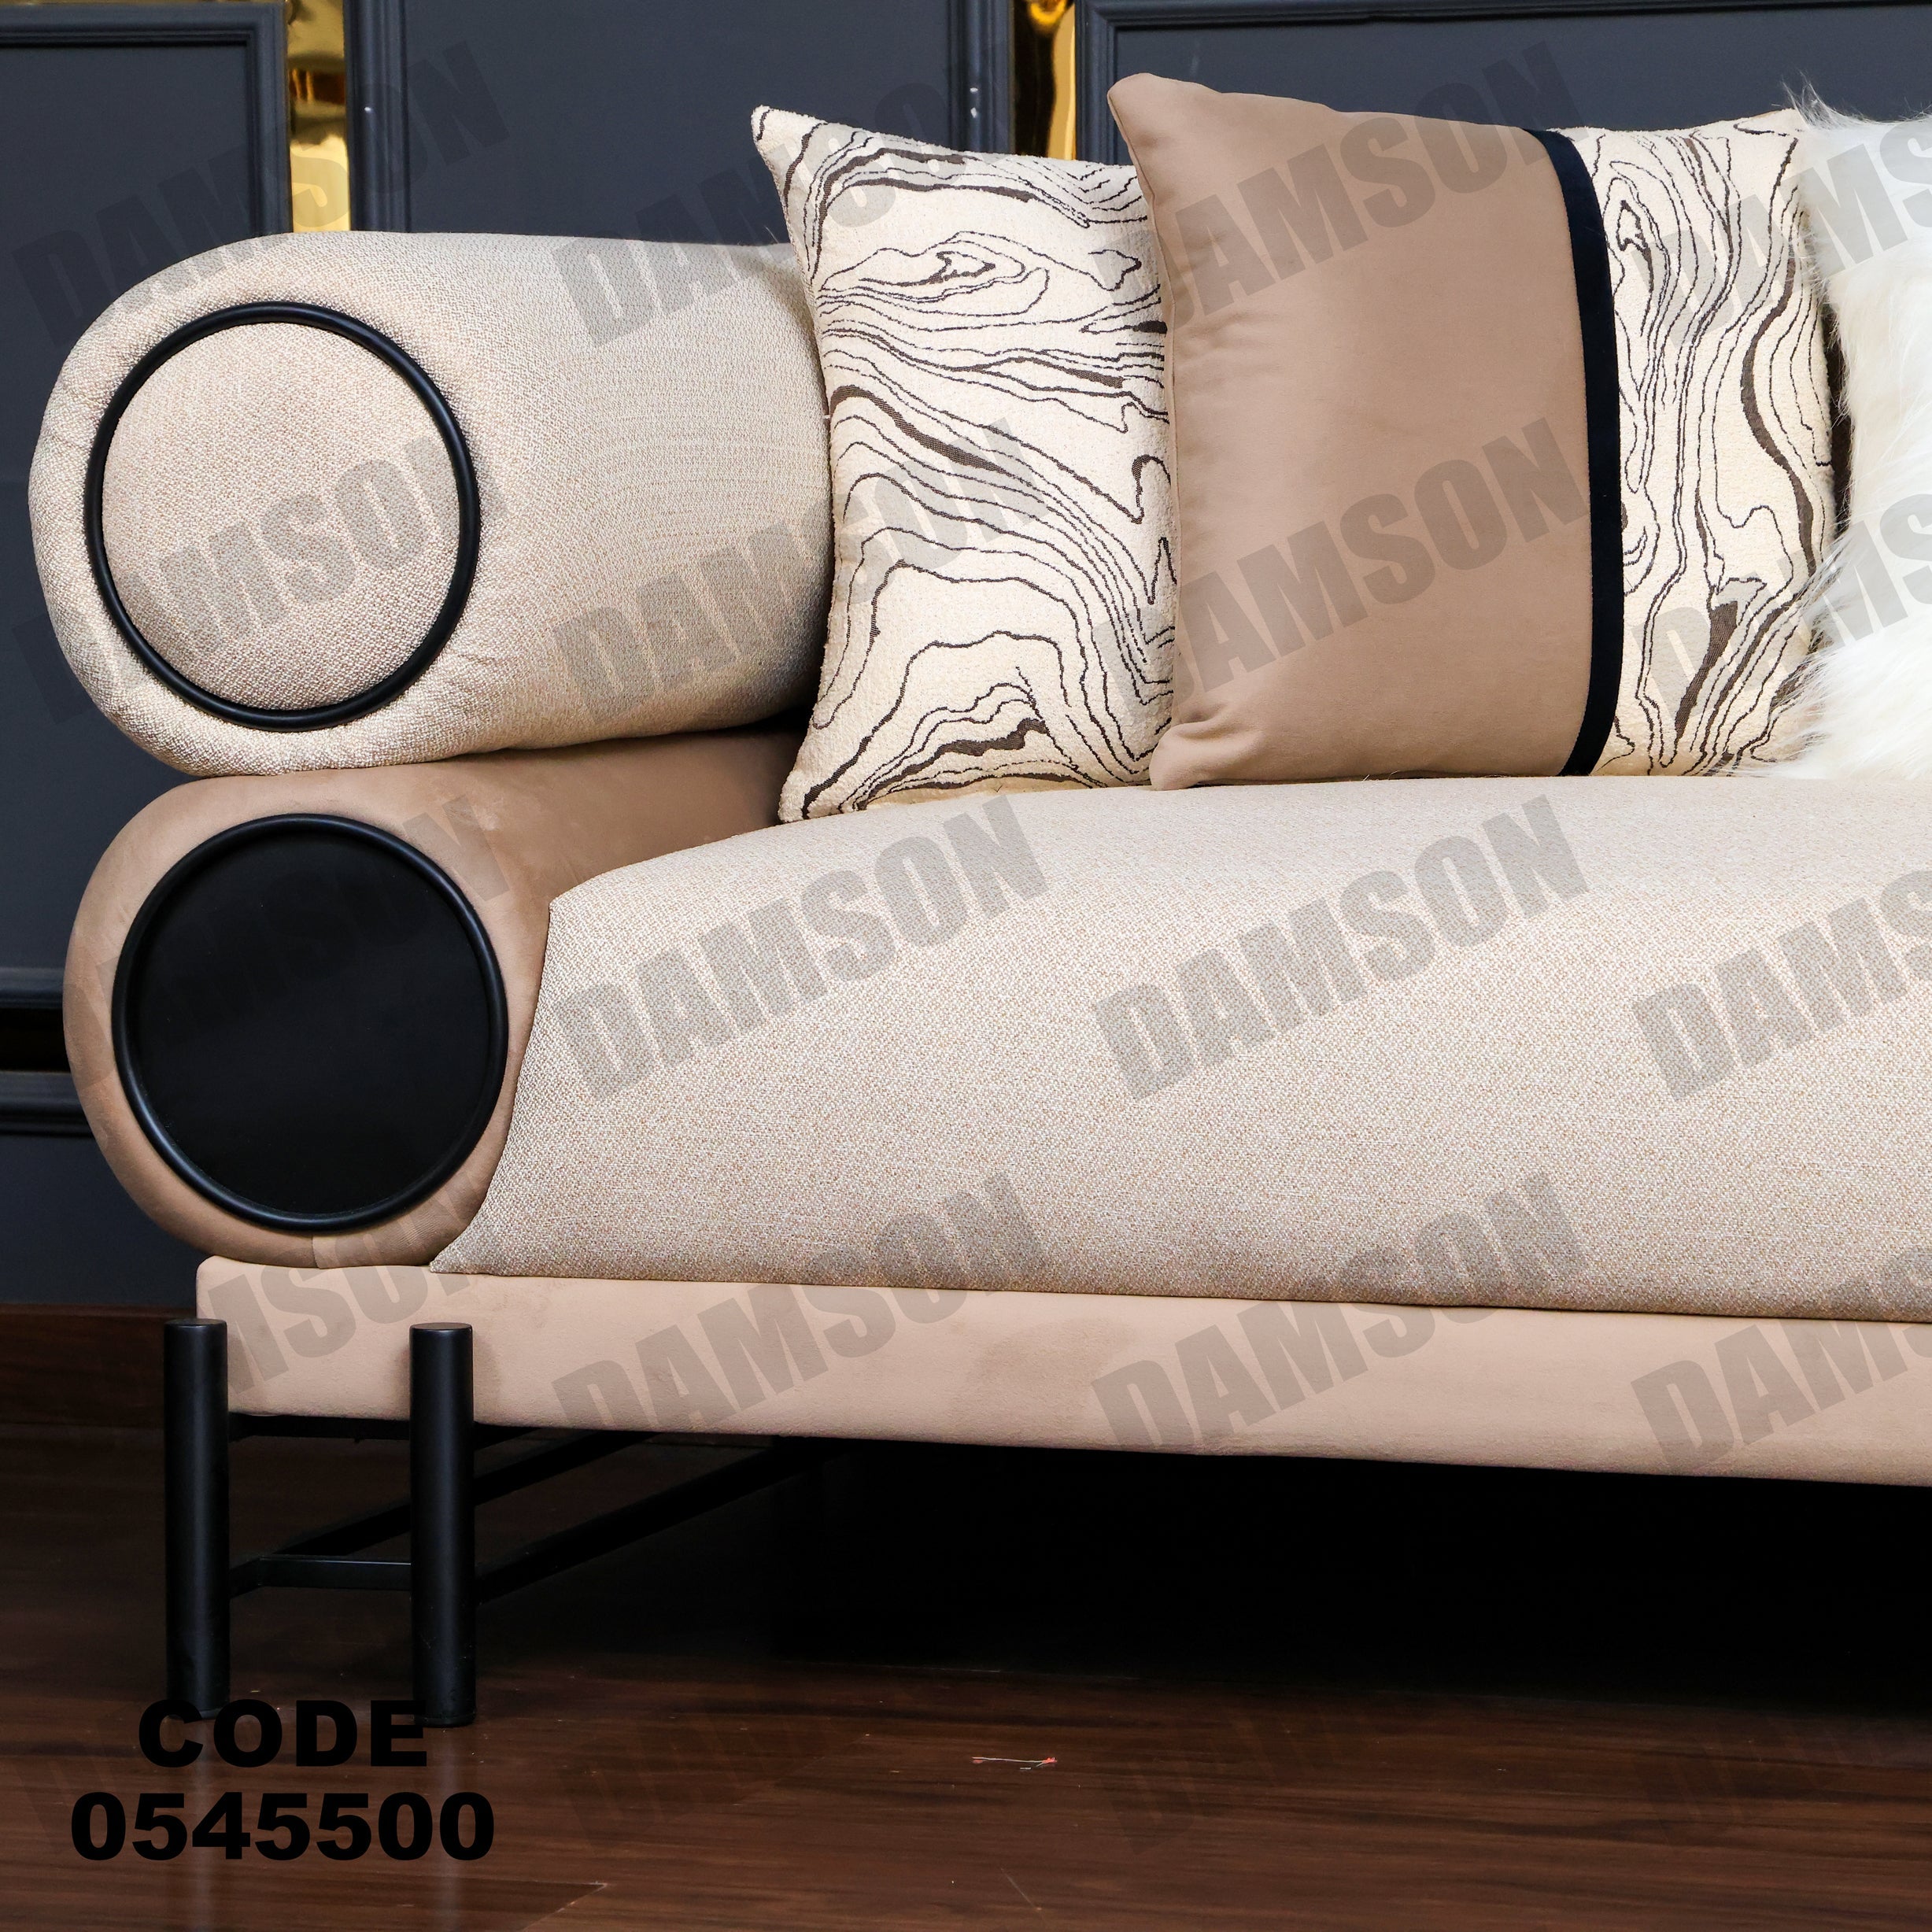 انترية 455 - Damson Furnitureانترية 455